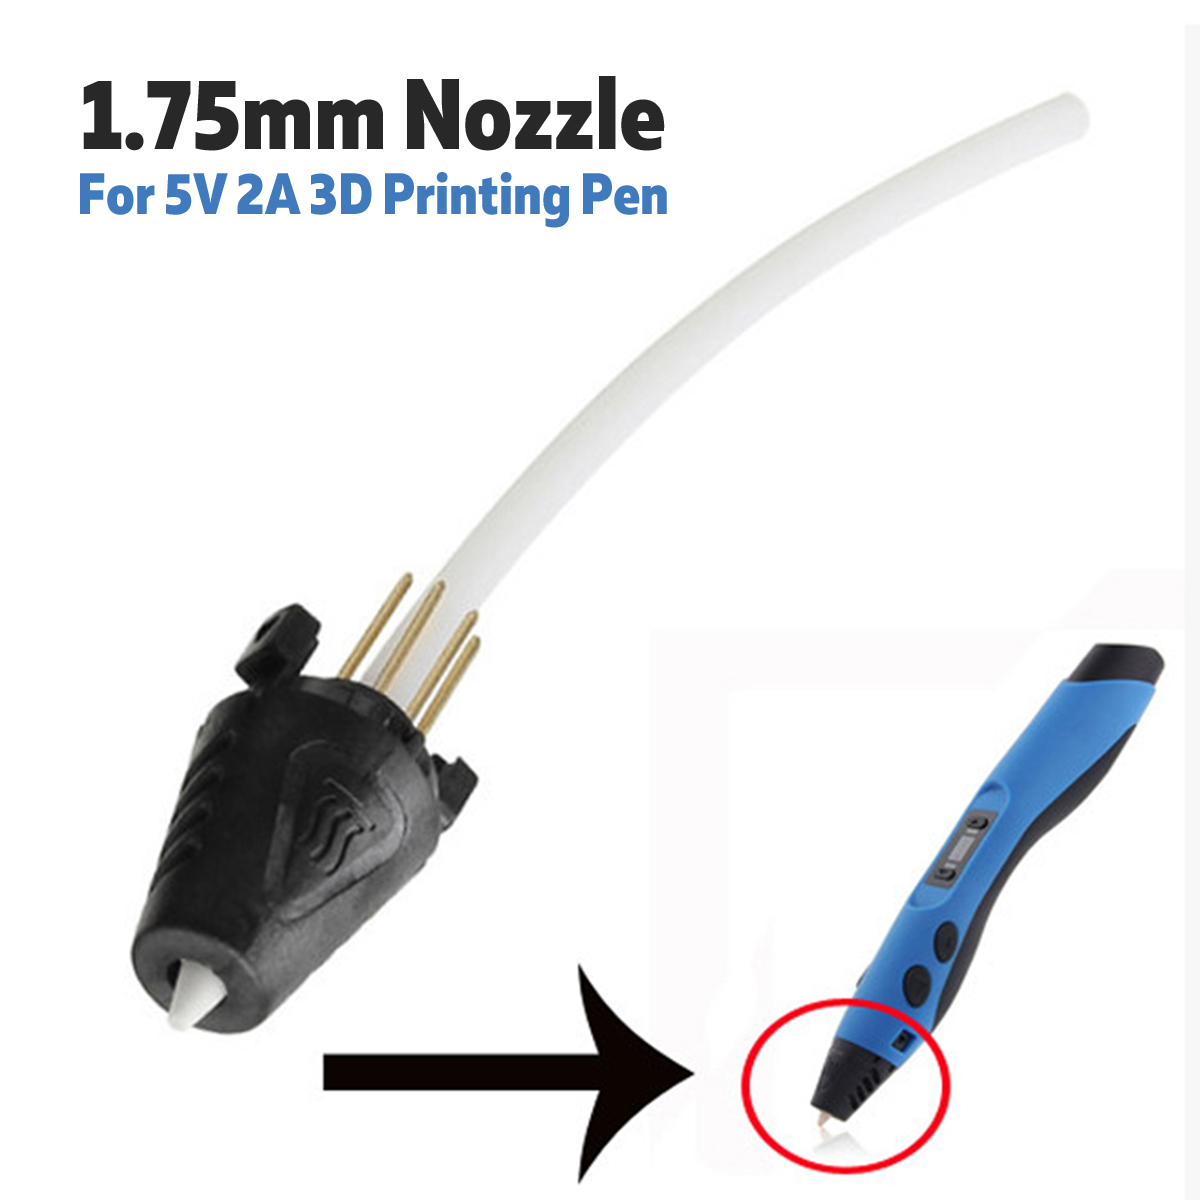 5Pcs-175mm-3D-Printing-Pen-Nozzle-For-5V-2A-3D-Printing-Pen-1347720